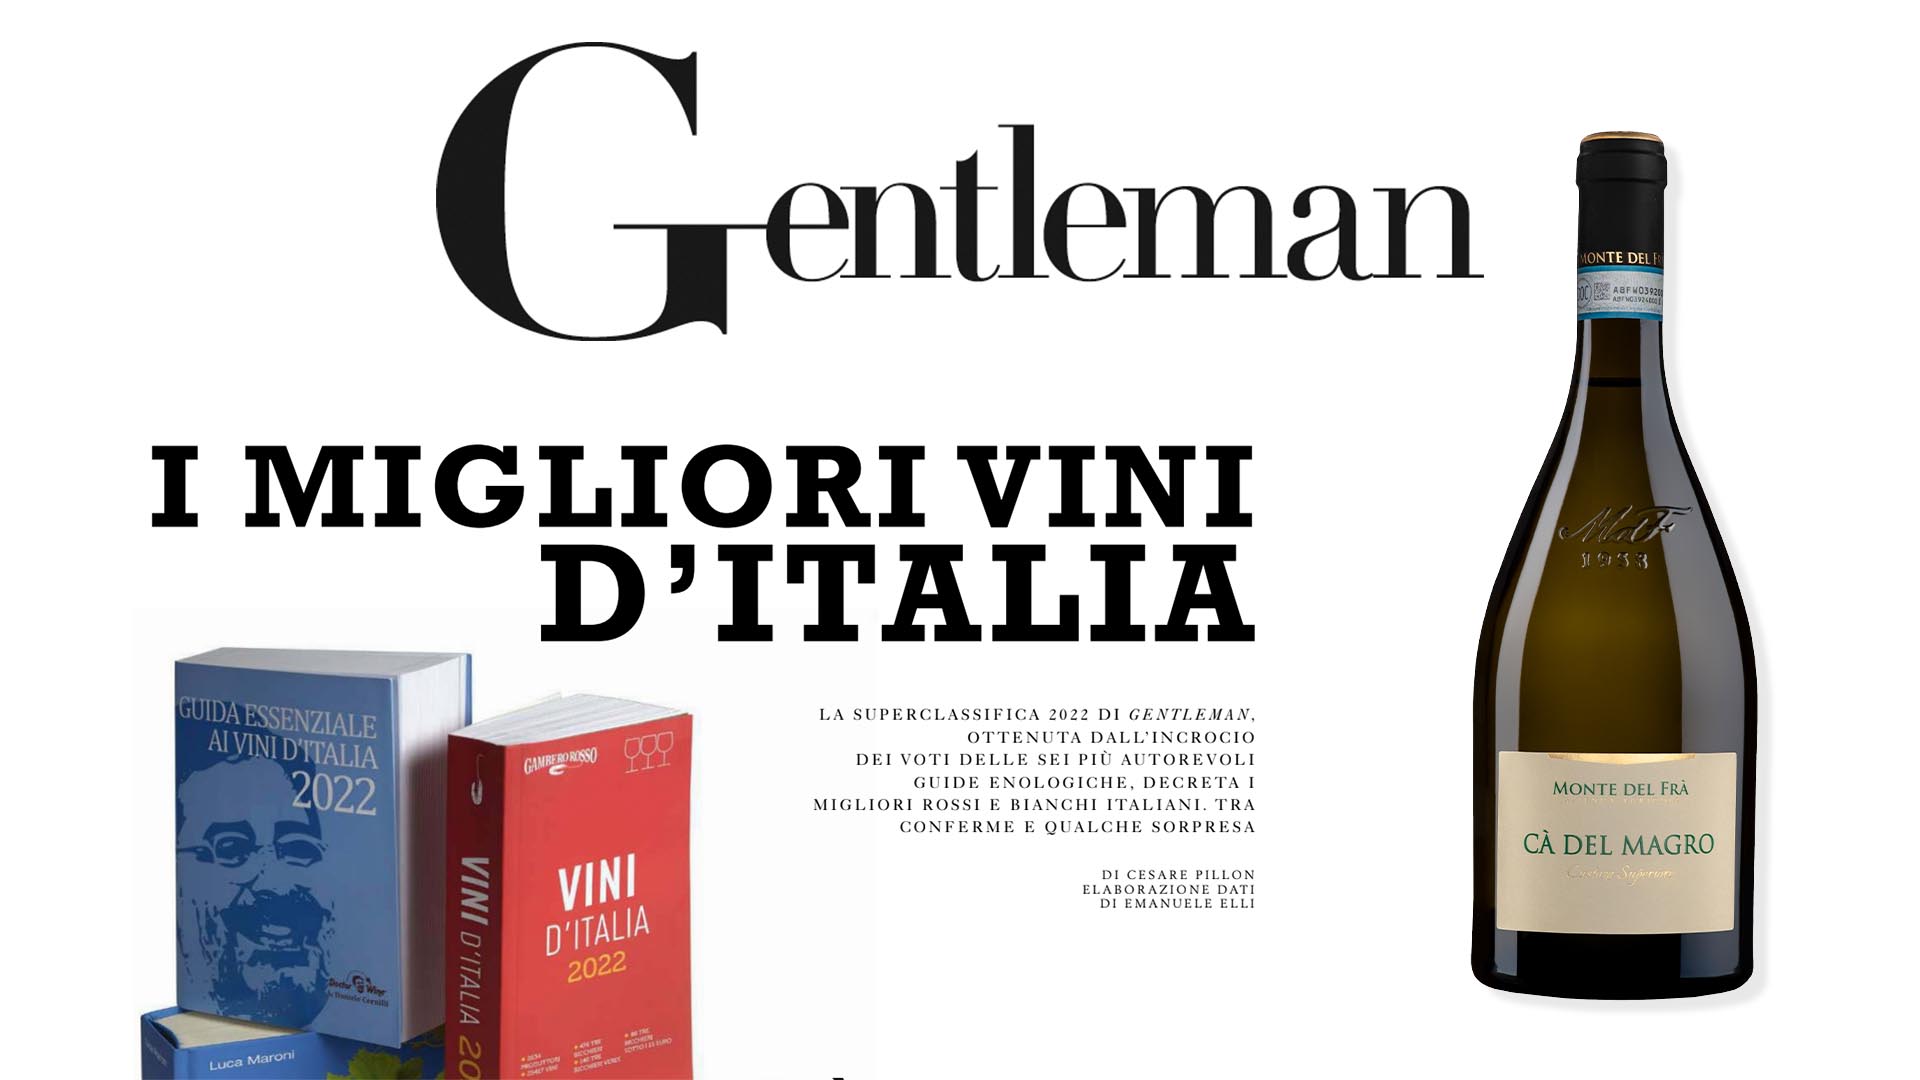 Cà del Magro 2019 tra i migliori vini d’Italia nella classifica Gentleman